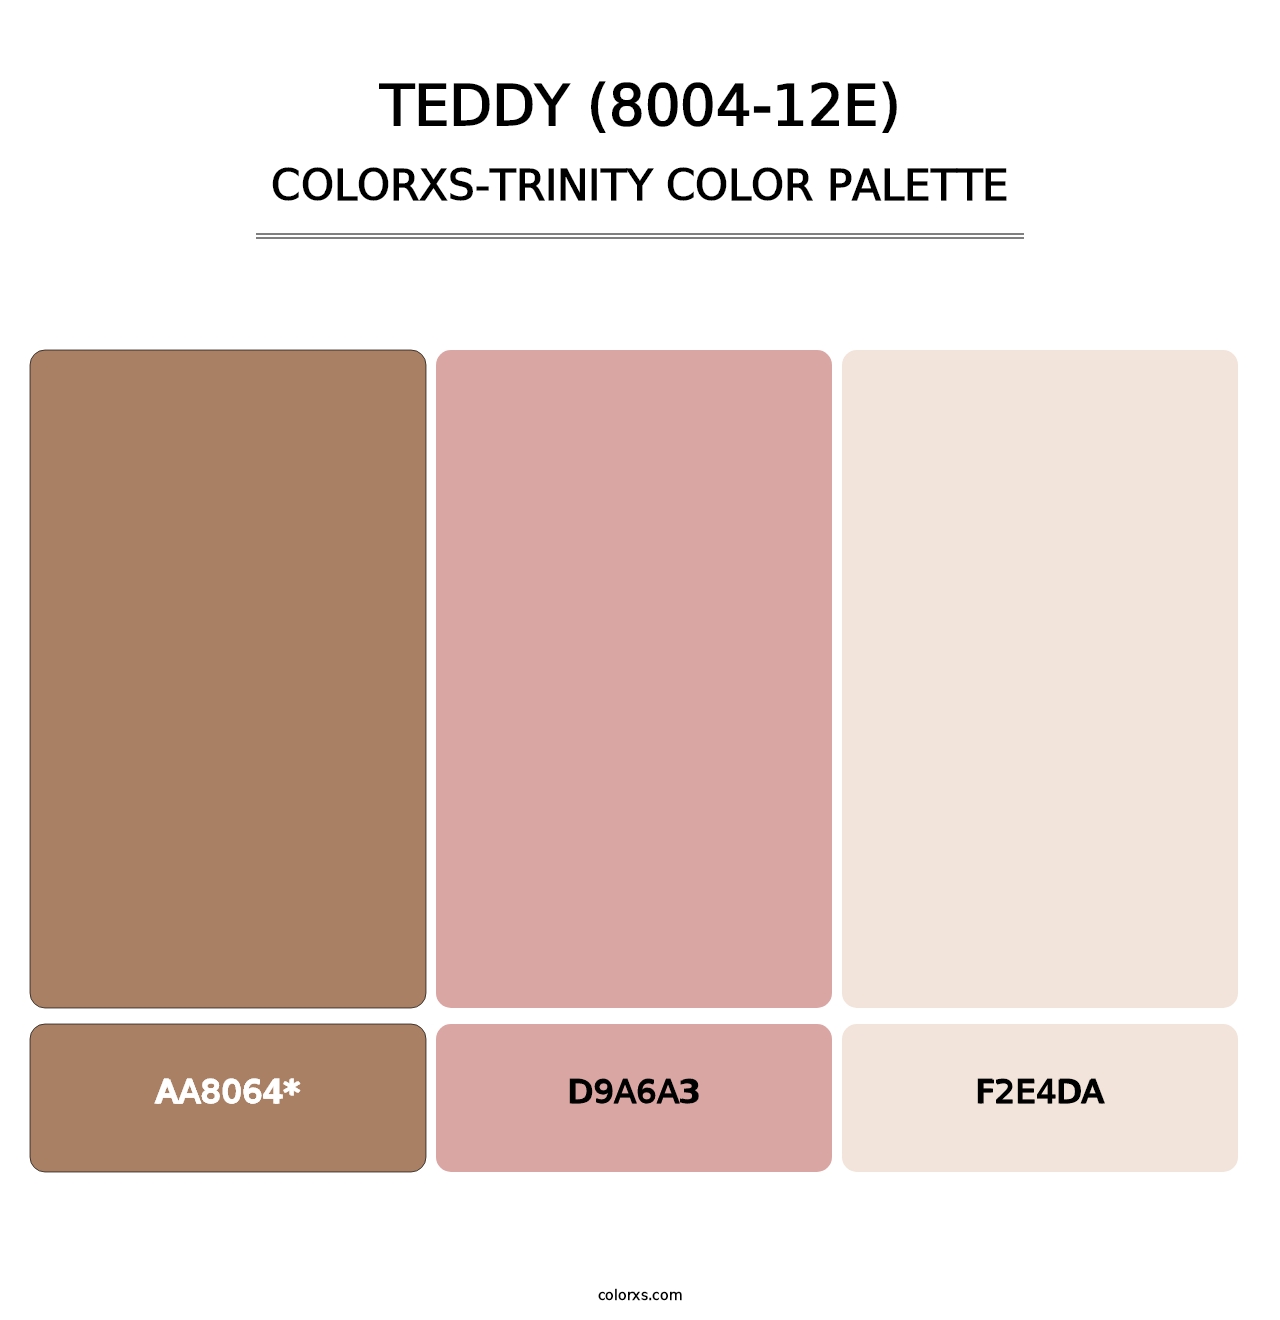 Teddy (8004-12E) - Colorxs Trinity Palette